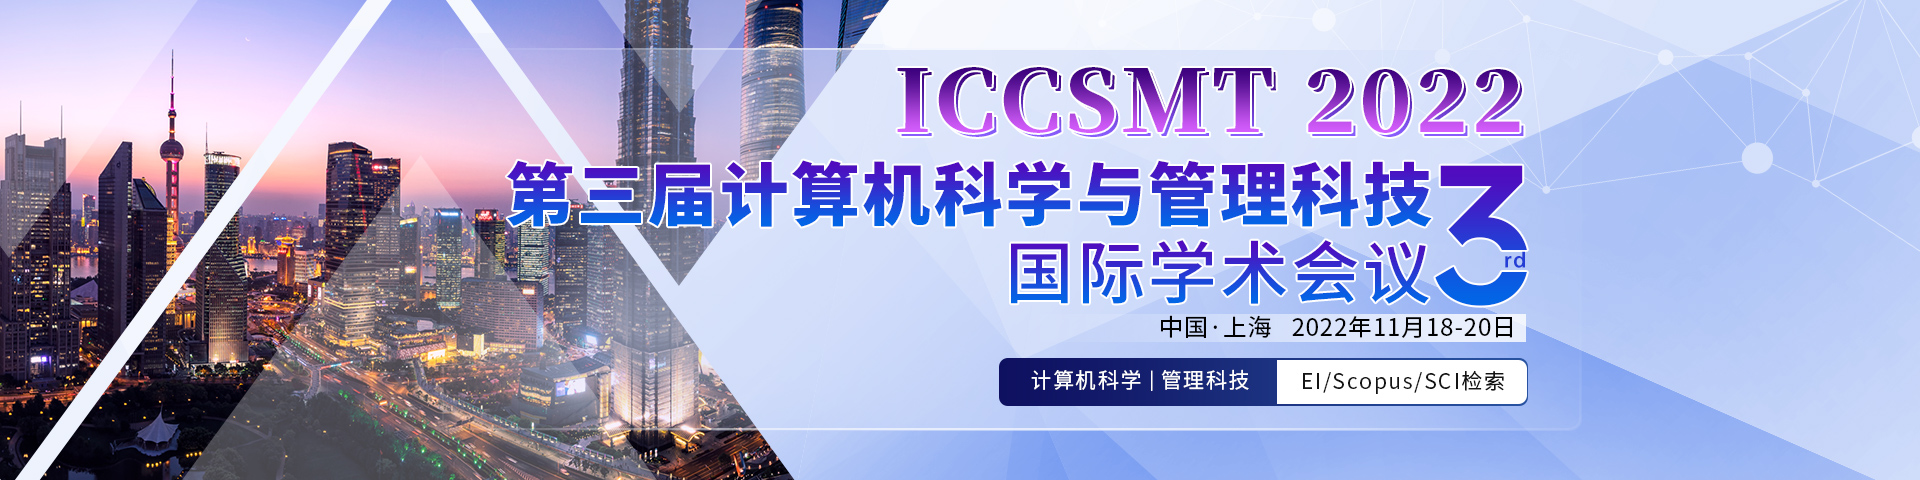 11月上海-ICCSMT2022-艾思平台-尹旭舟20220331.jpg